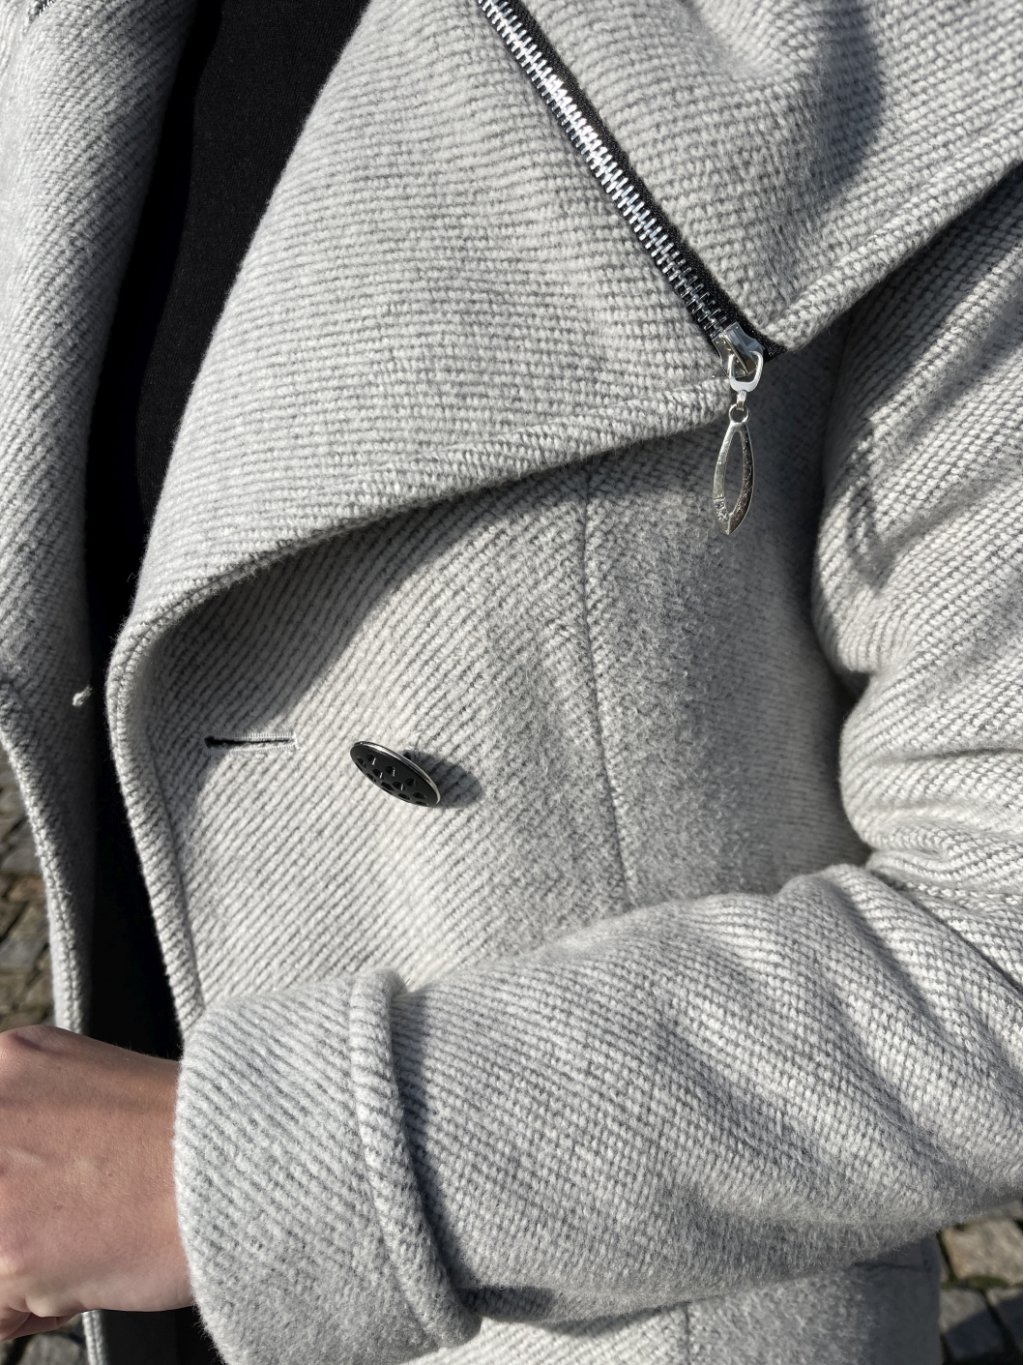 Kabát La Gabriella 5239-432 šedý jemný proužek s kapucí